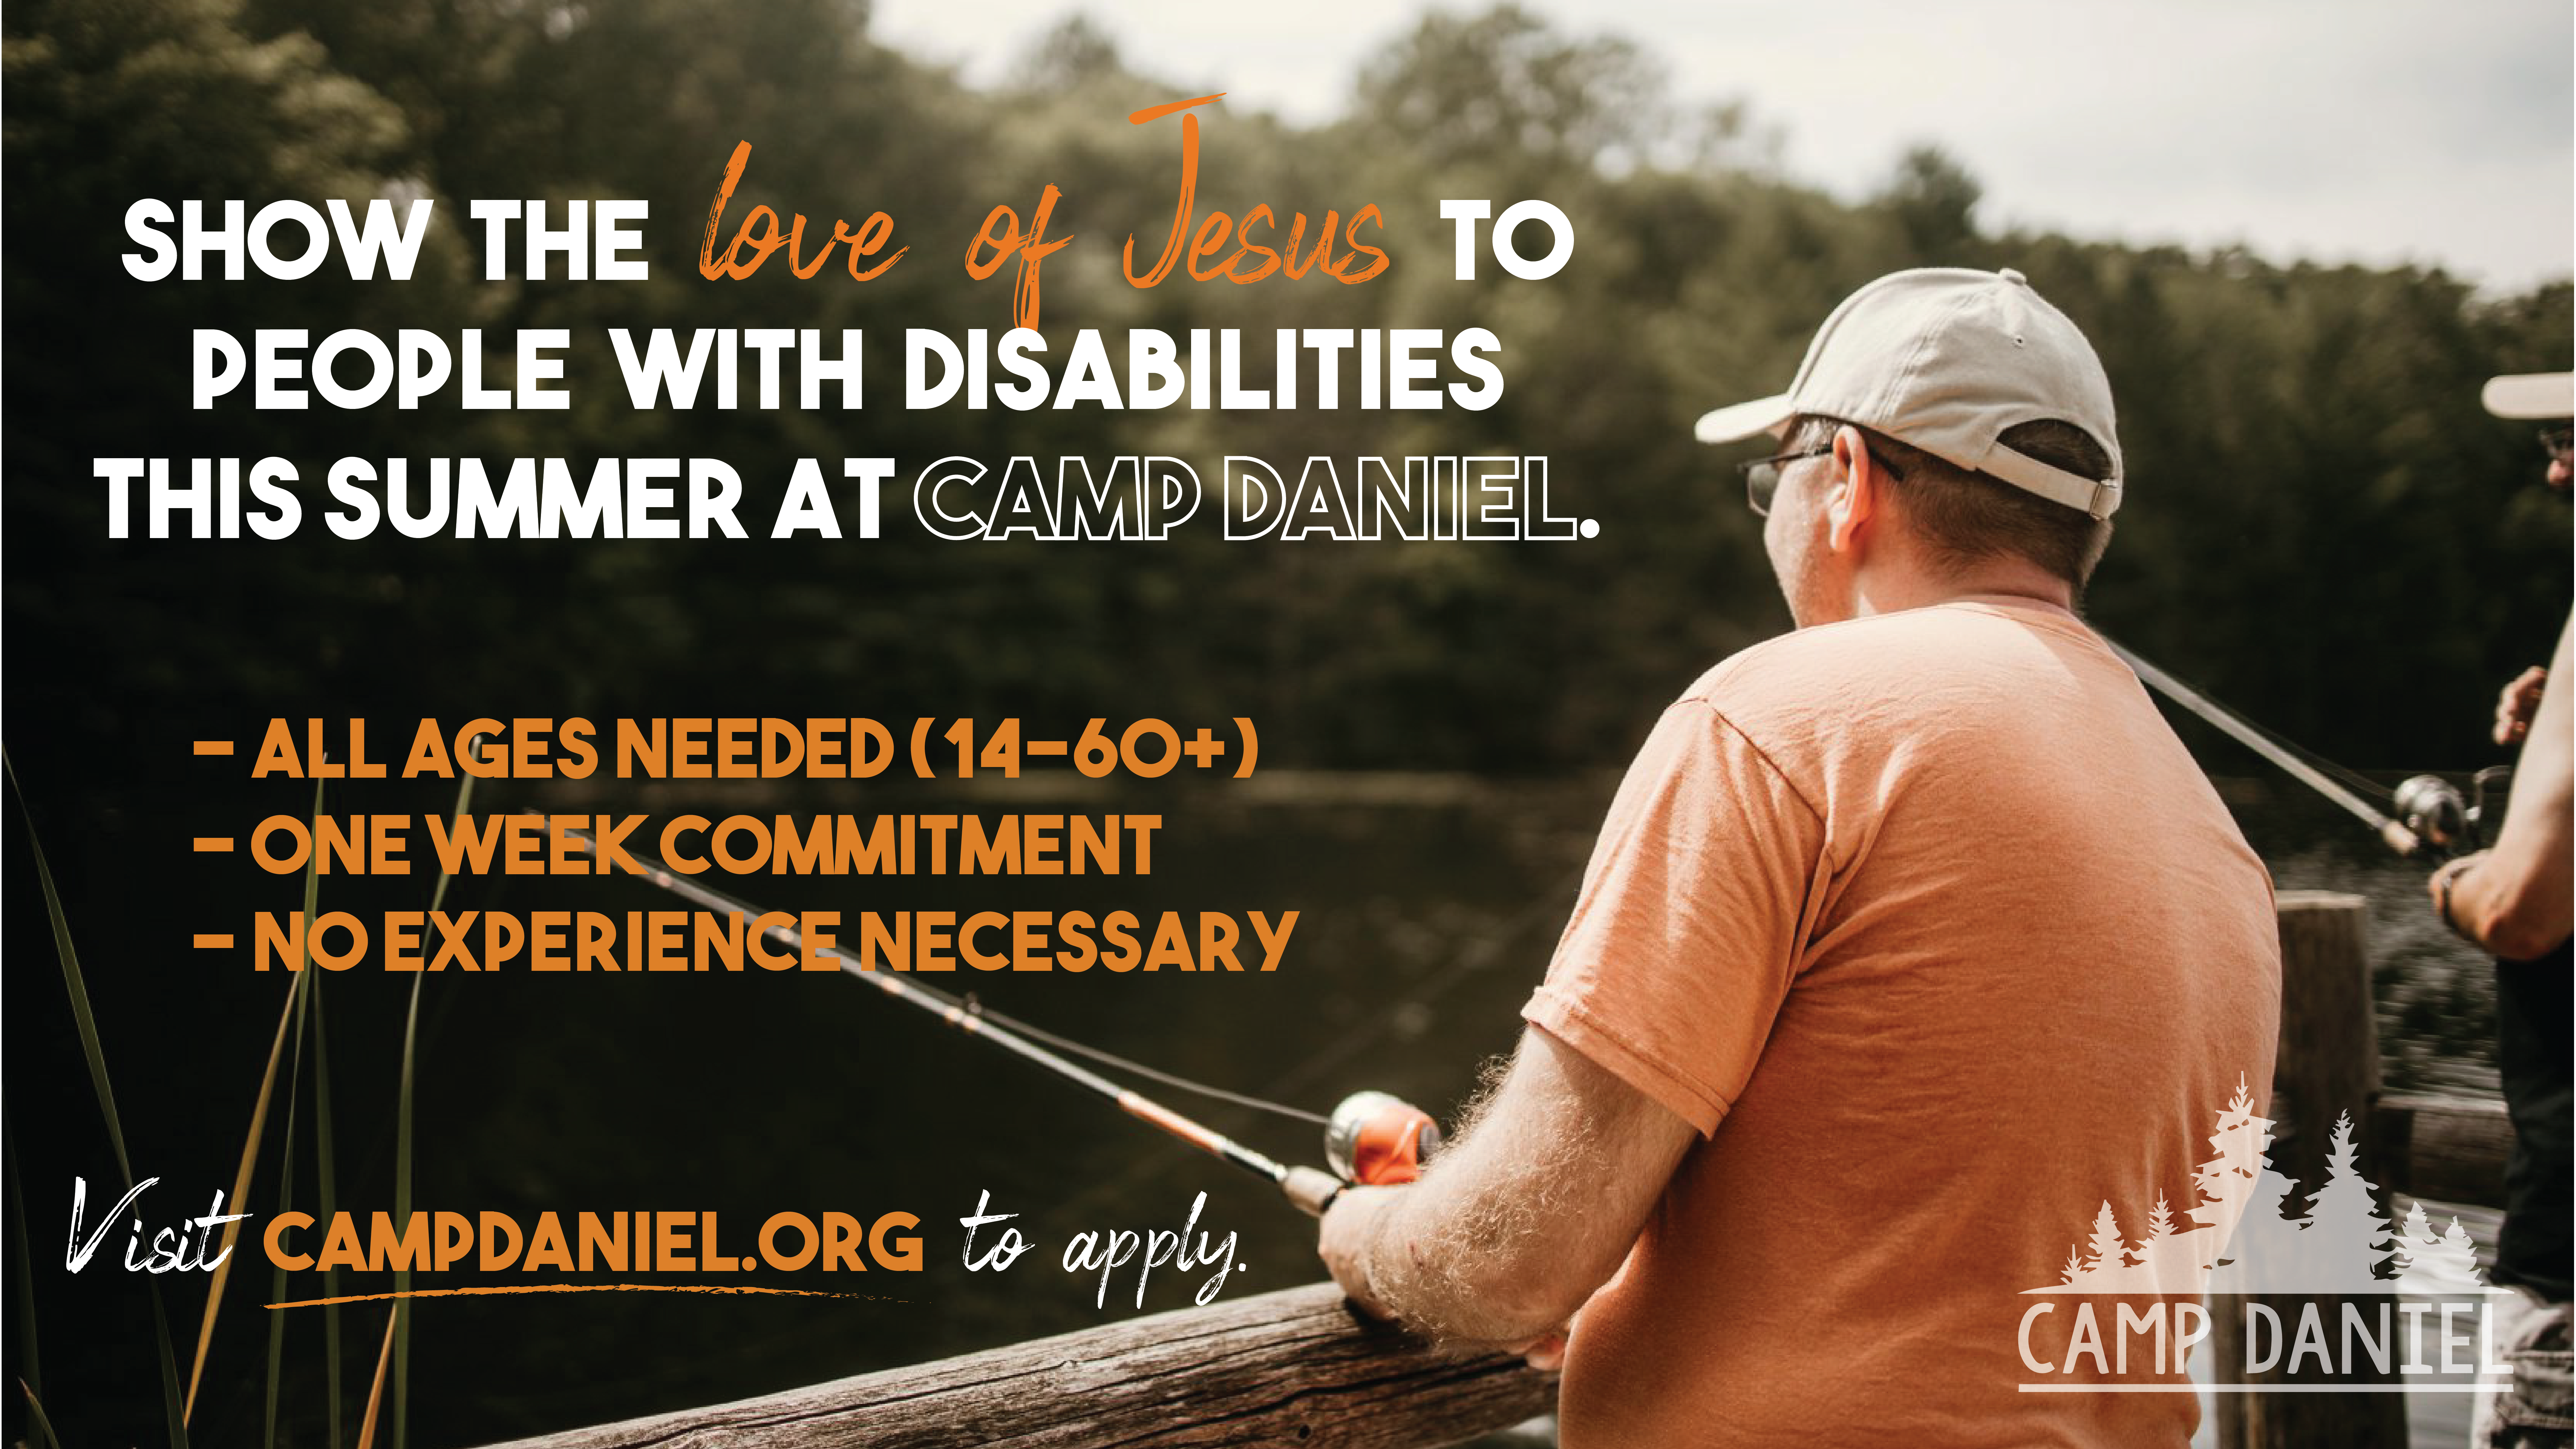 Camp Daniel Volunteers Needed